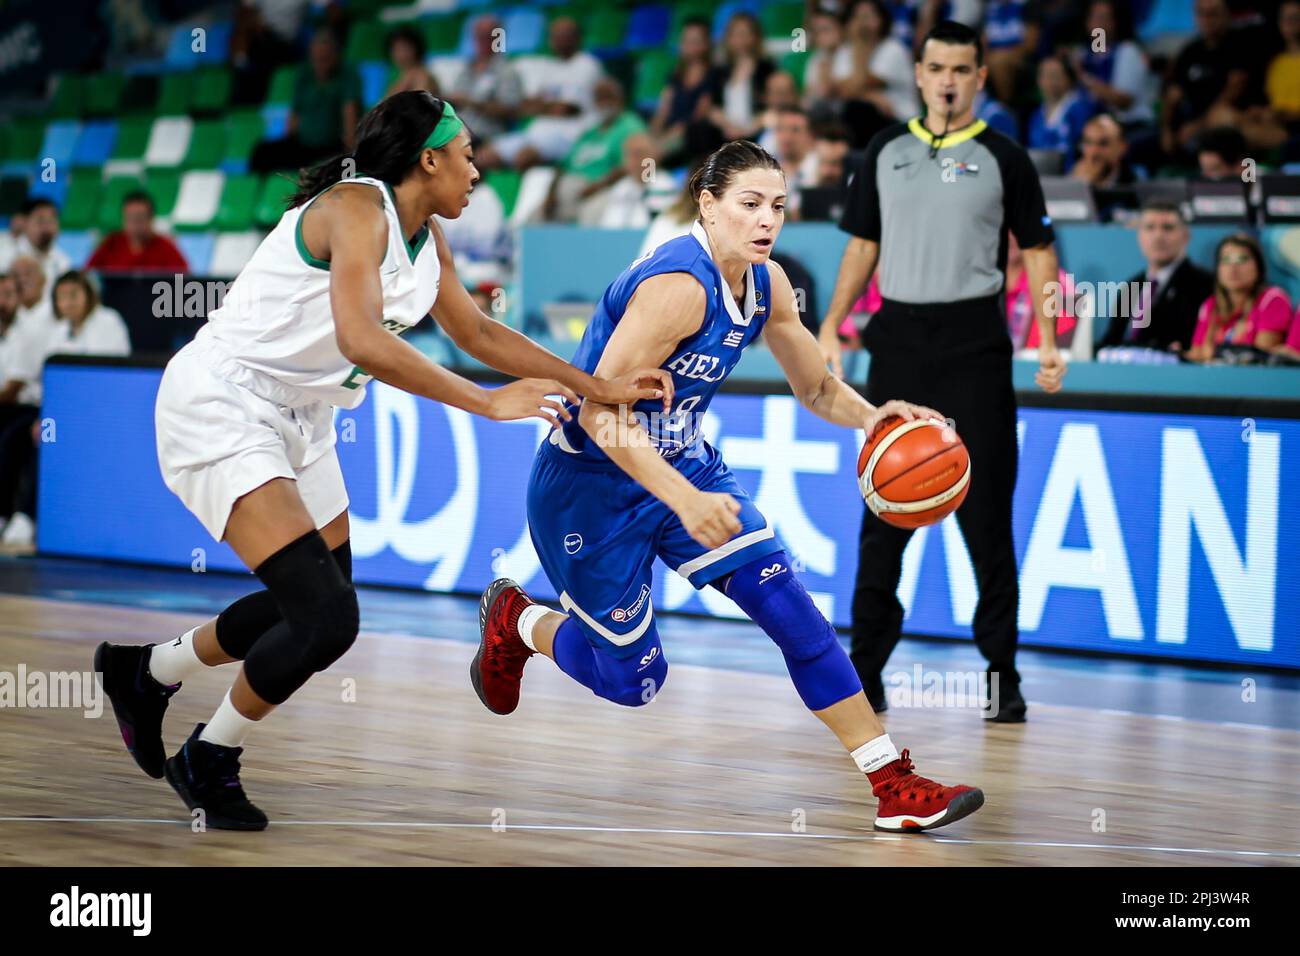 Espagne, Ténérife, 26 septembre 2018: La joueuse de basket-ball grecque Evanthia Maltsi en action pendant la coupe du monde de basket-ball féminin de la FIBA Banque D'Images